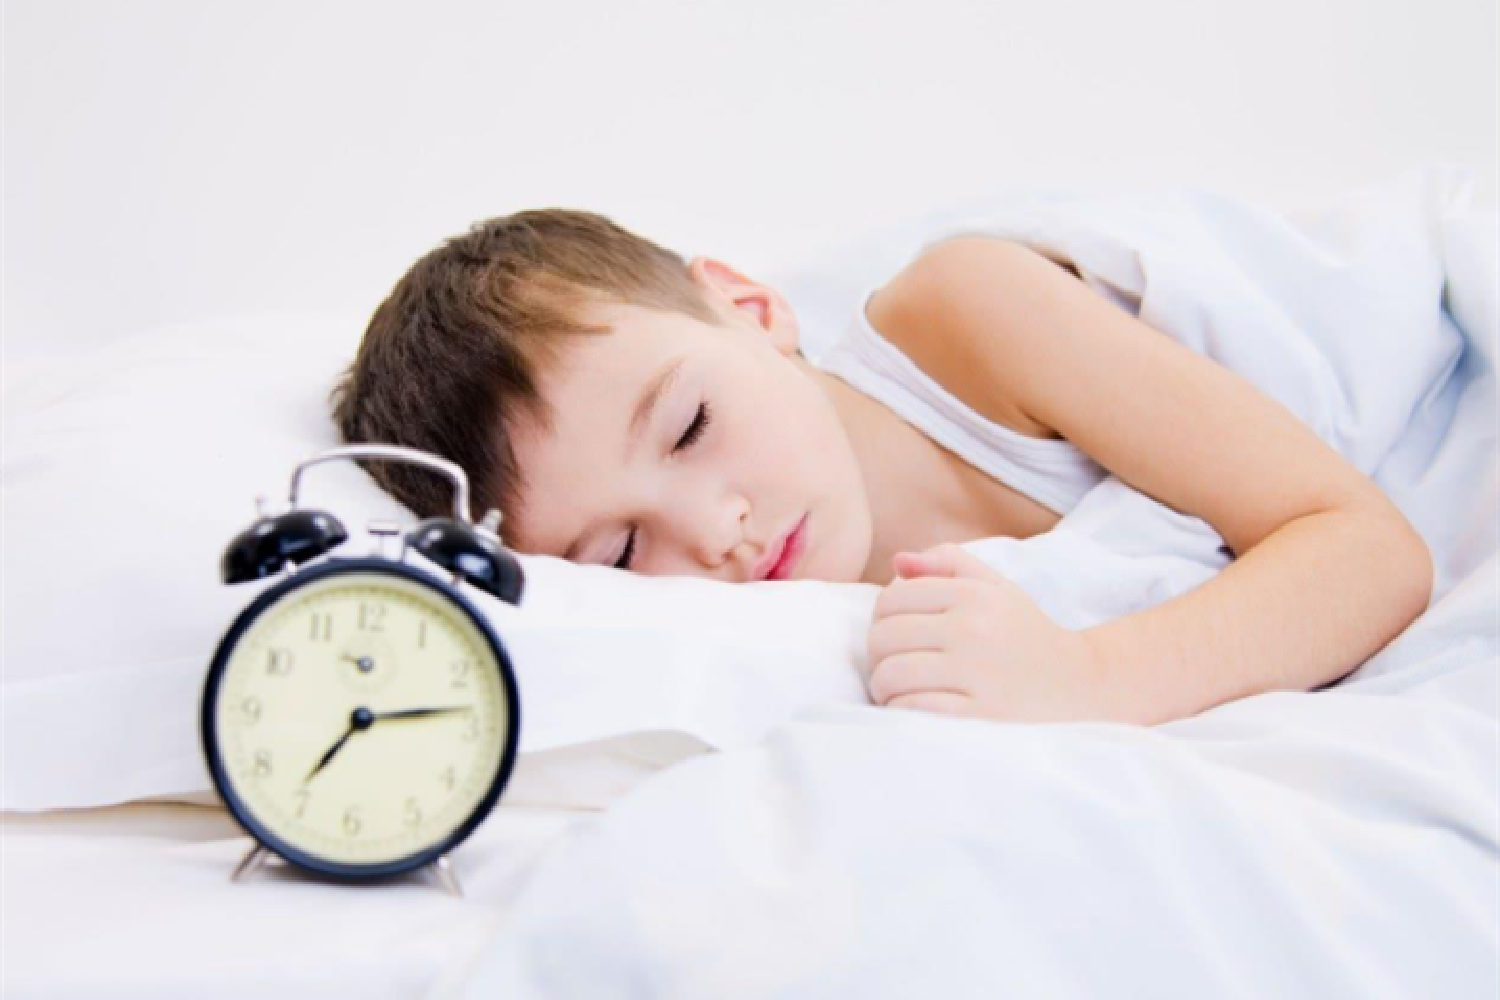 孩子几点睡觉,对大脑和身体发育最有好处?科学数据告诉你